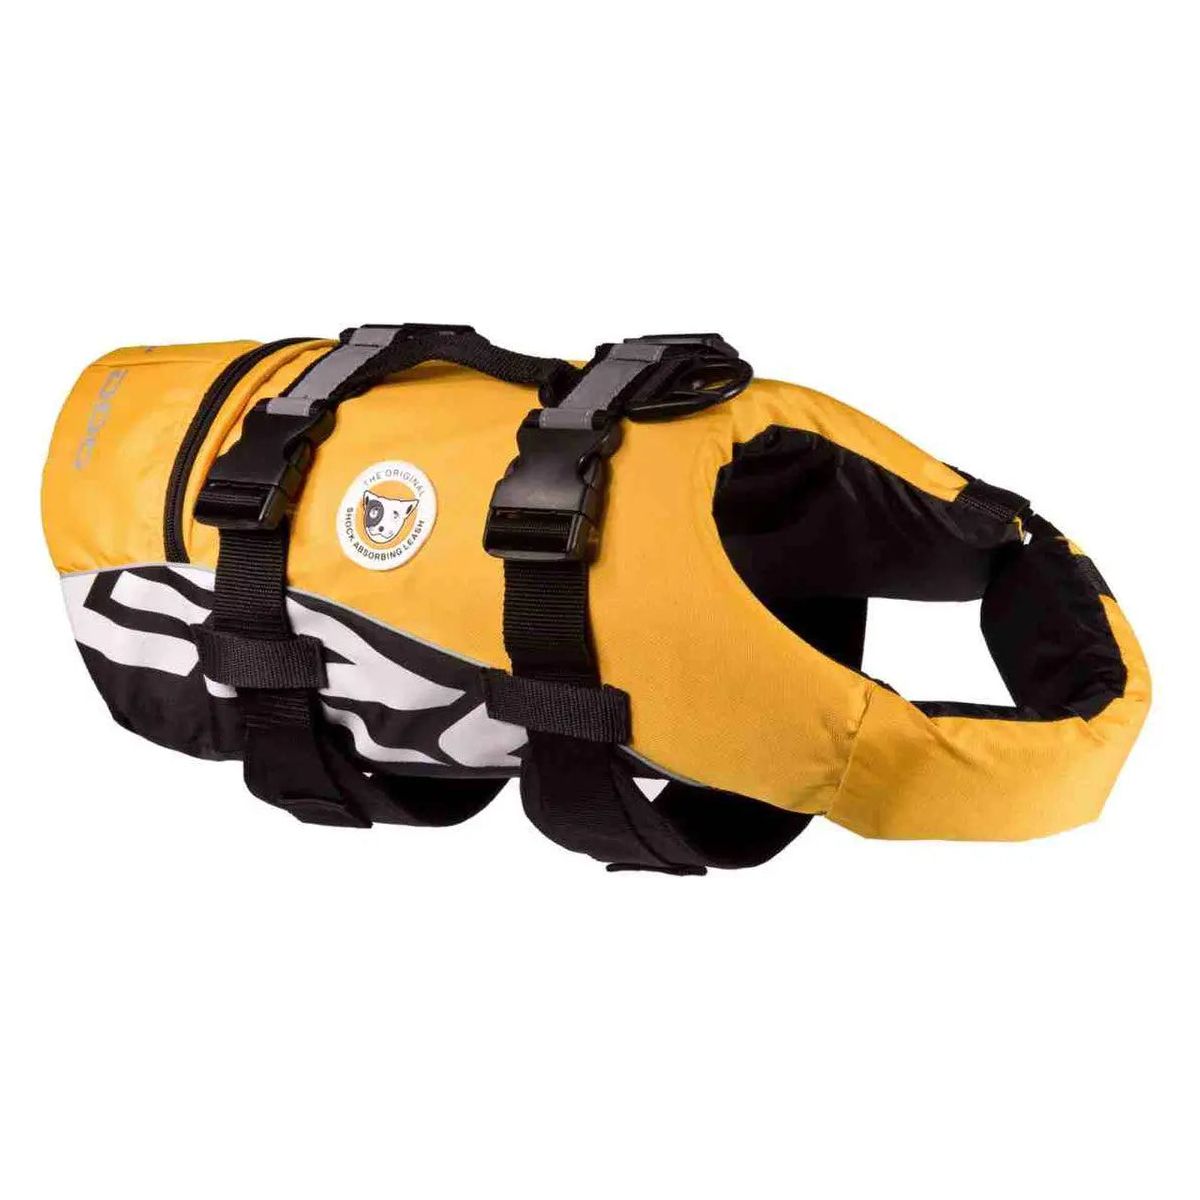 EzyDog Doggy Floatation Device Adjustable Dog Life Jacket EZY Dog